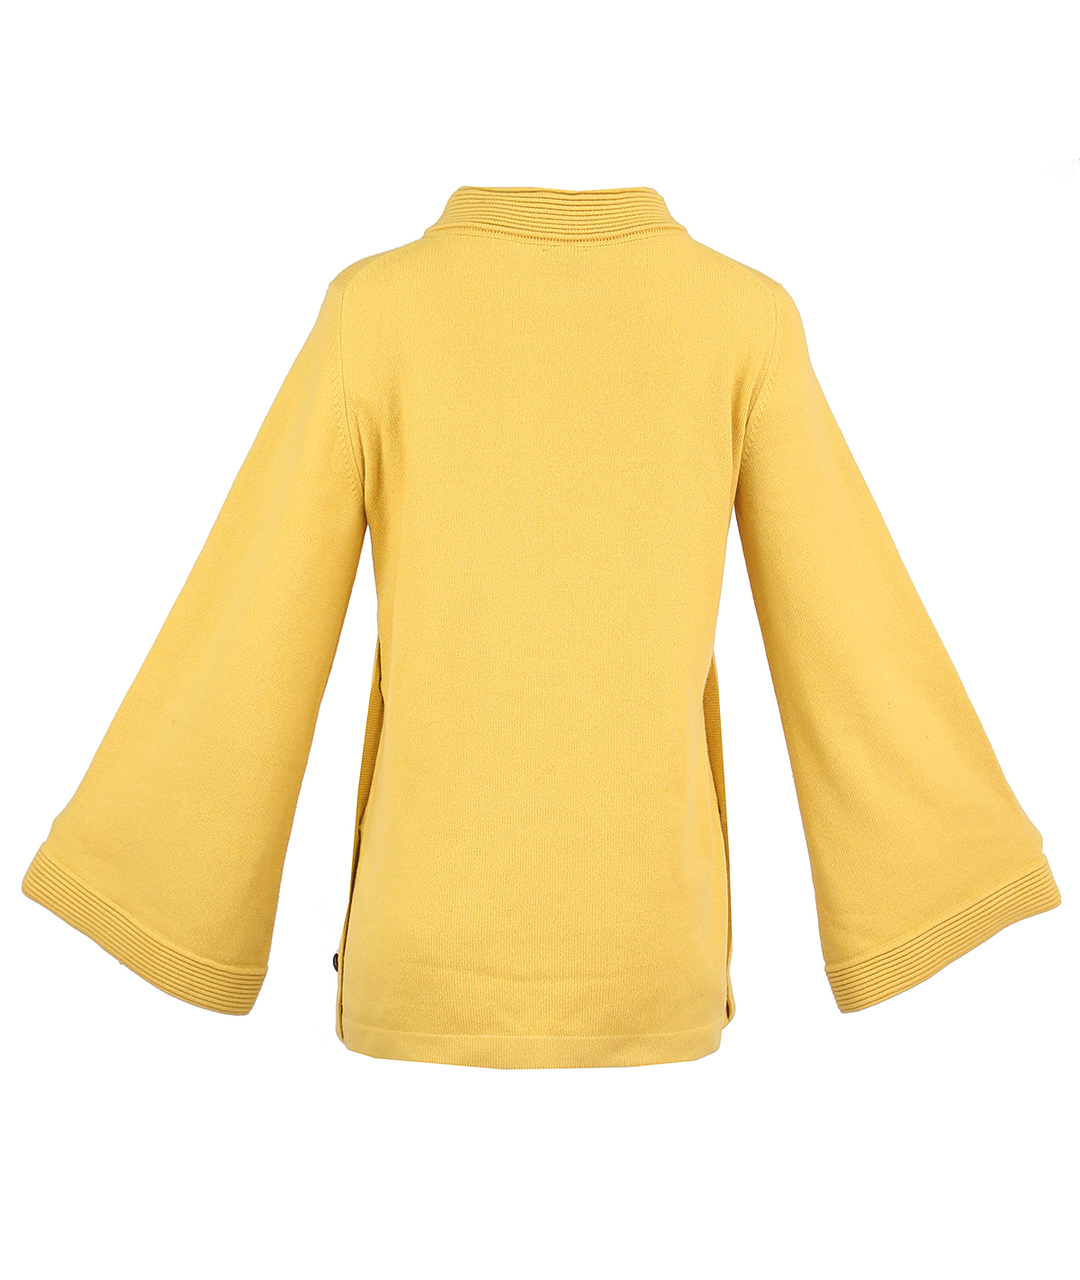 CHANEL PRE-OWNED Желтый кашемировый джемпер / свитер, фото 2